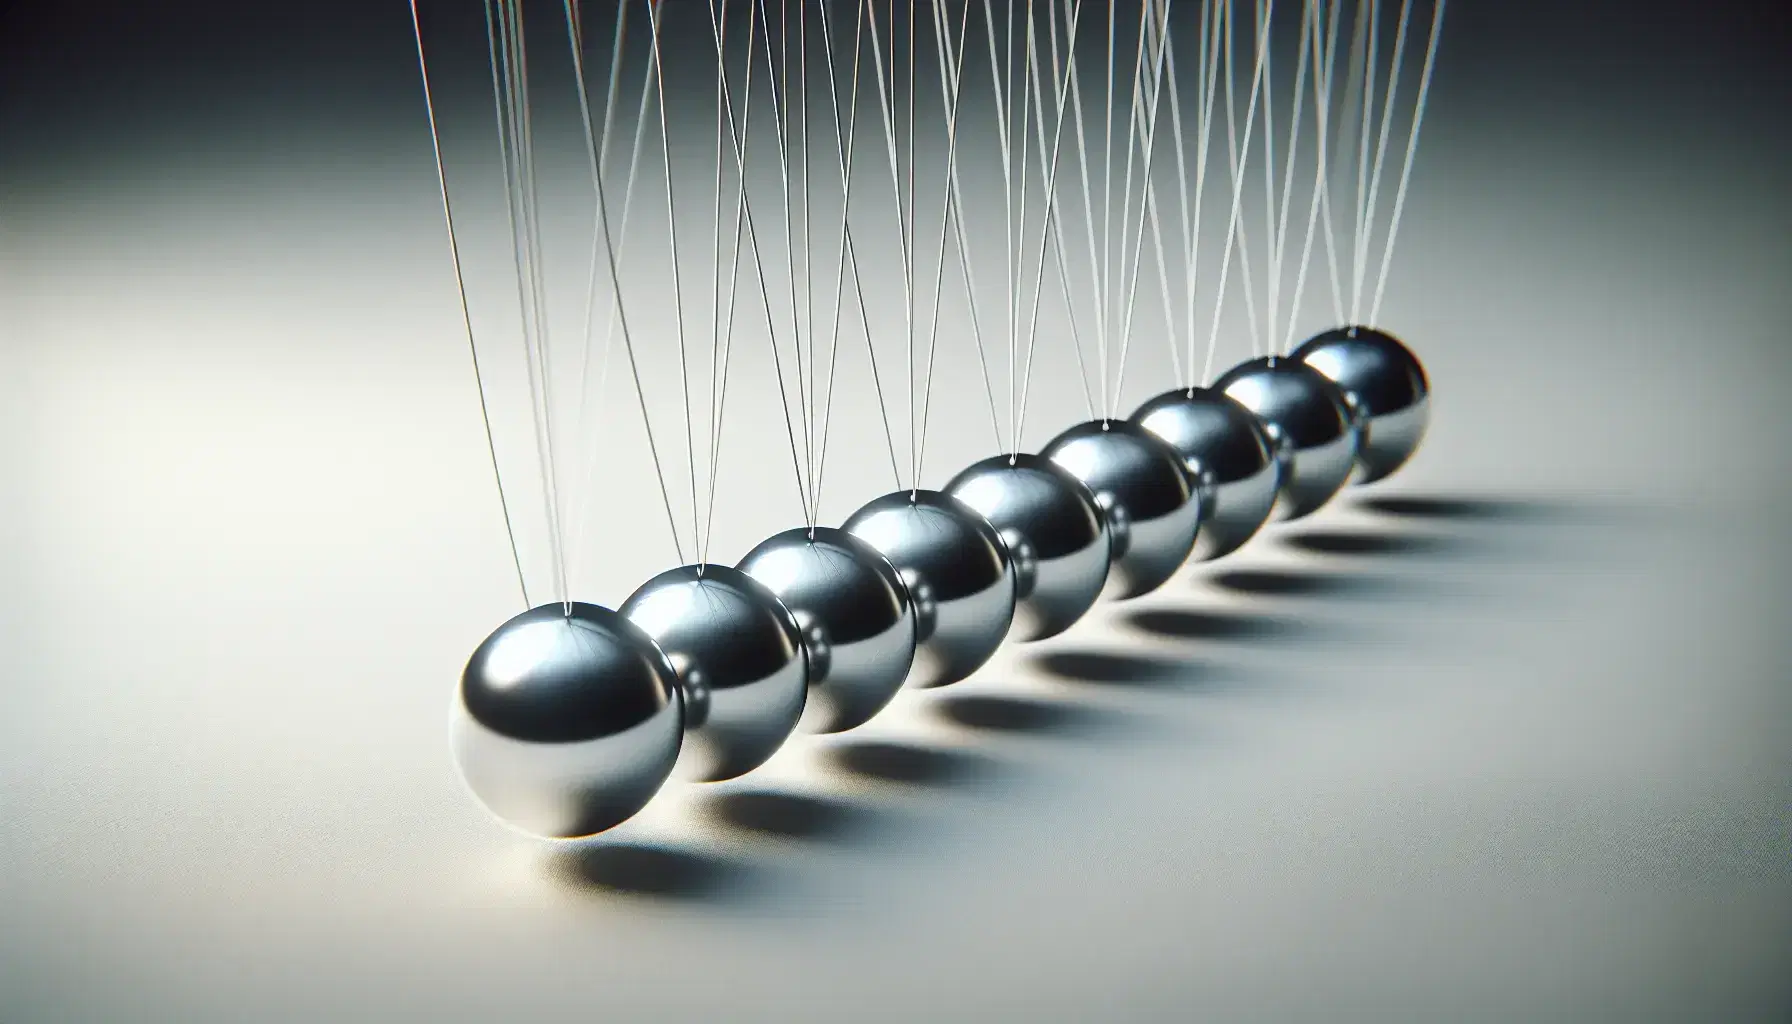 Cuna de Newton con esferas metálicas colgantes en línea, una elevada a punto de impactar, reflejando luz sobre fondo neutro.